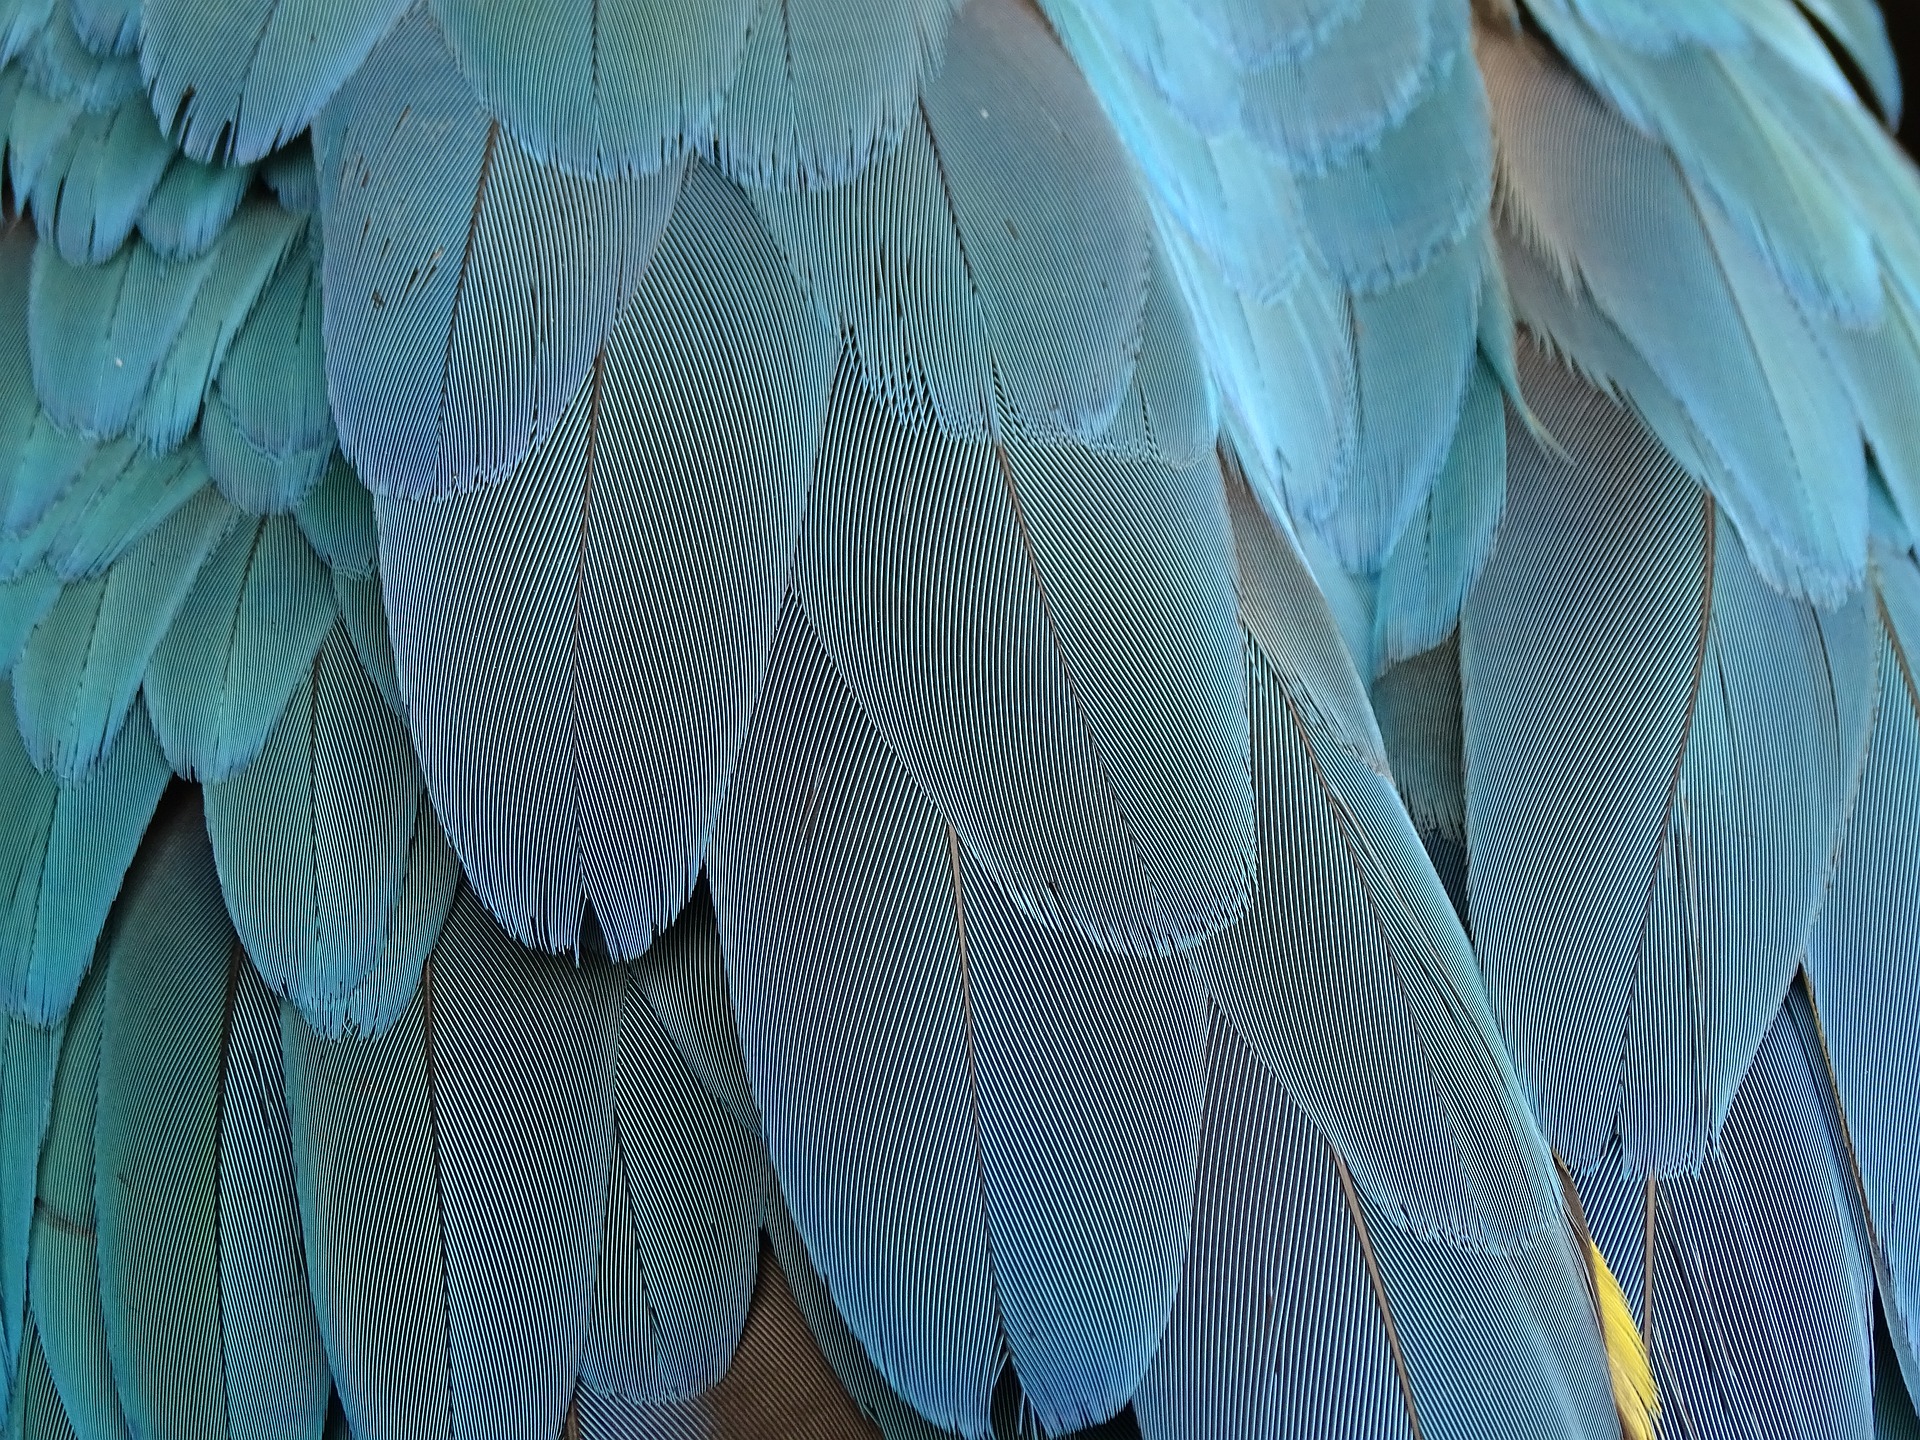 Eine Aufnahme von Federn, die aufgefächert und in einem leichten Blauton gehalten sind.